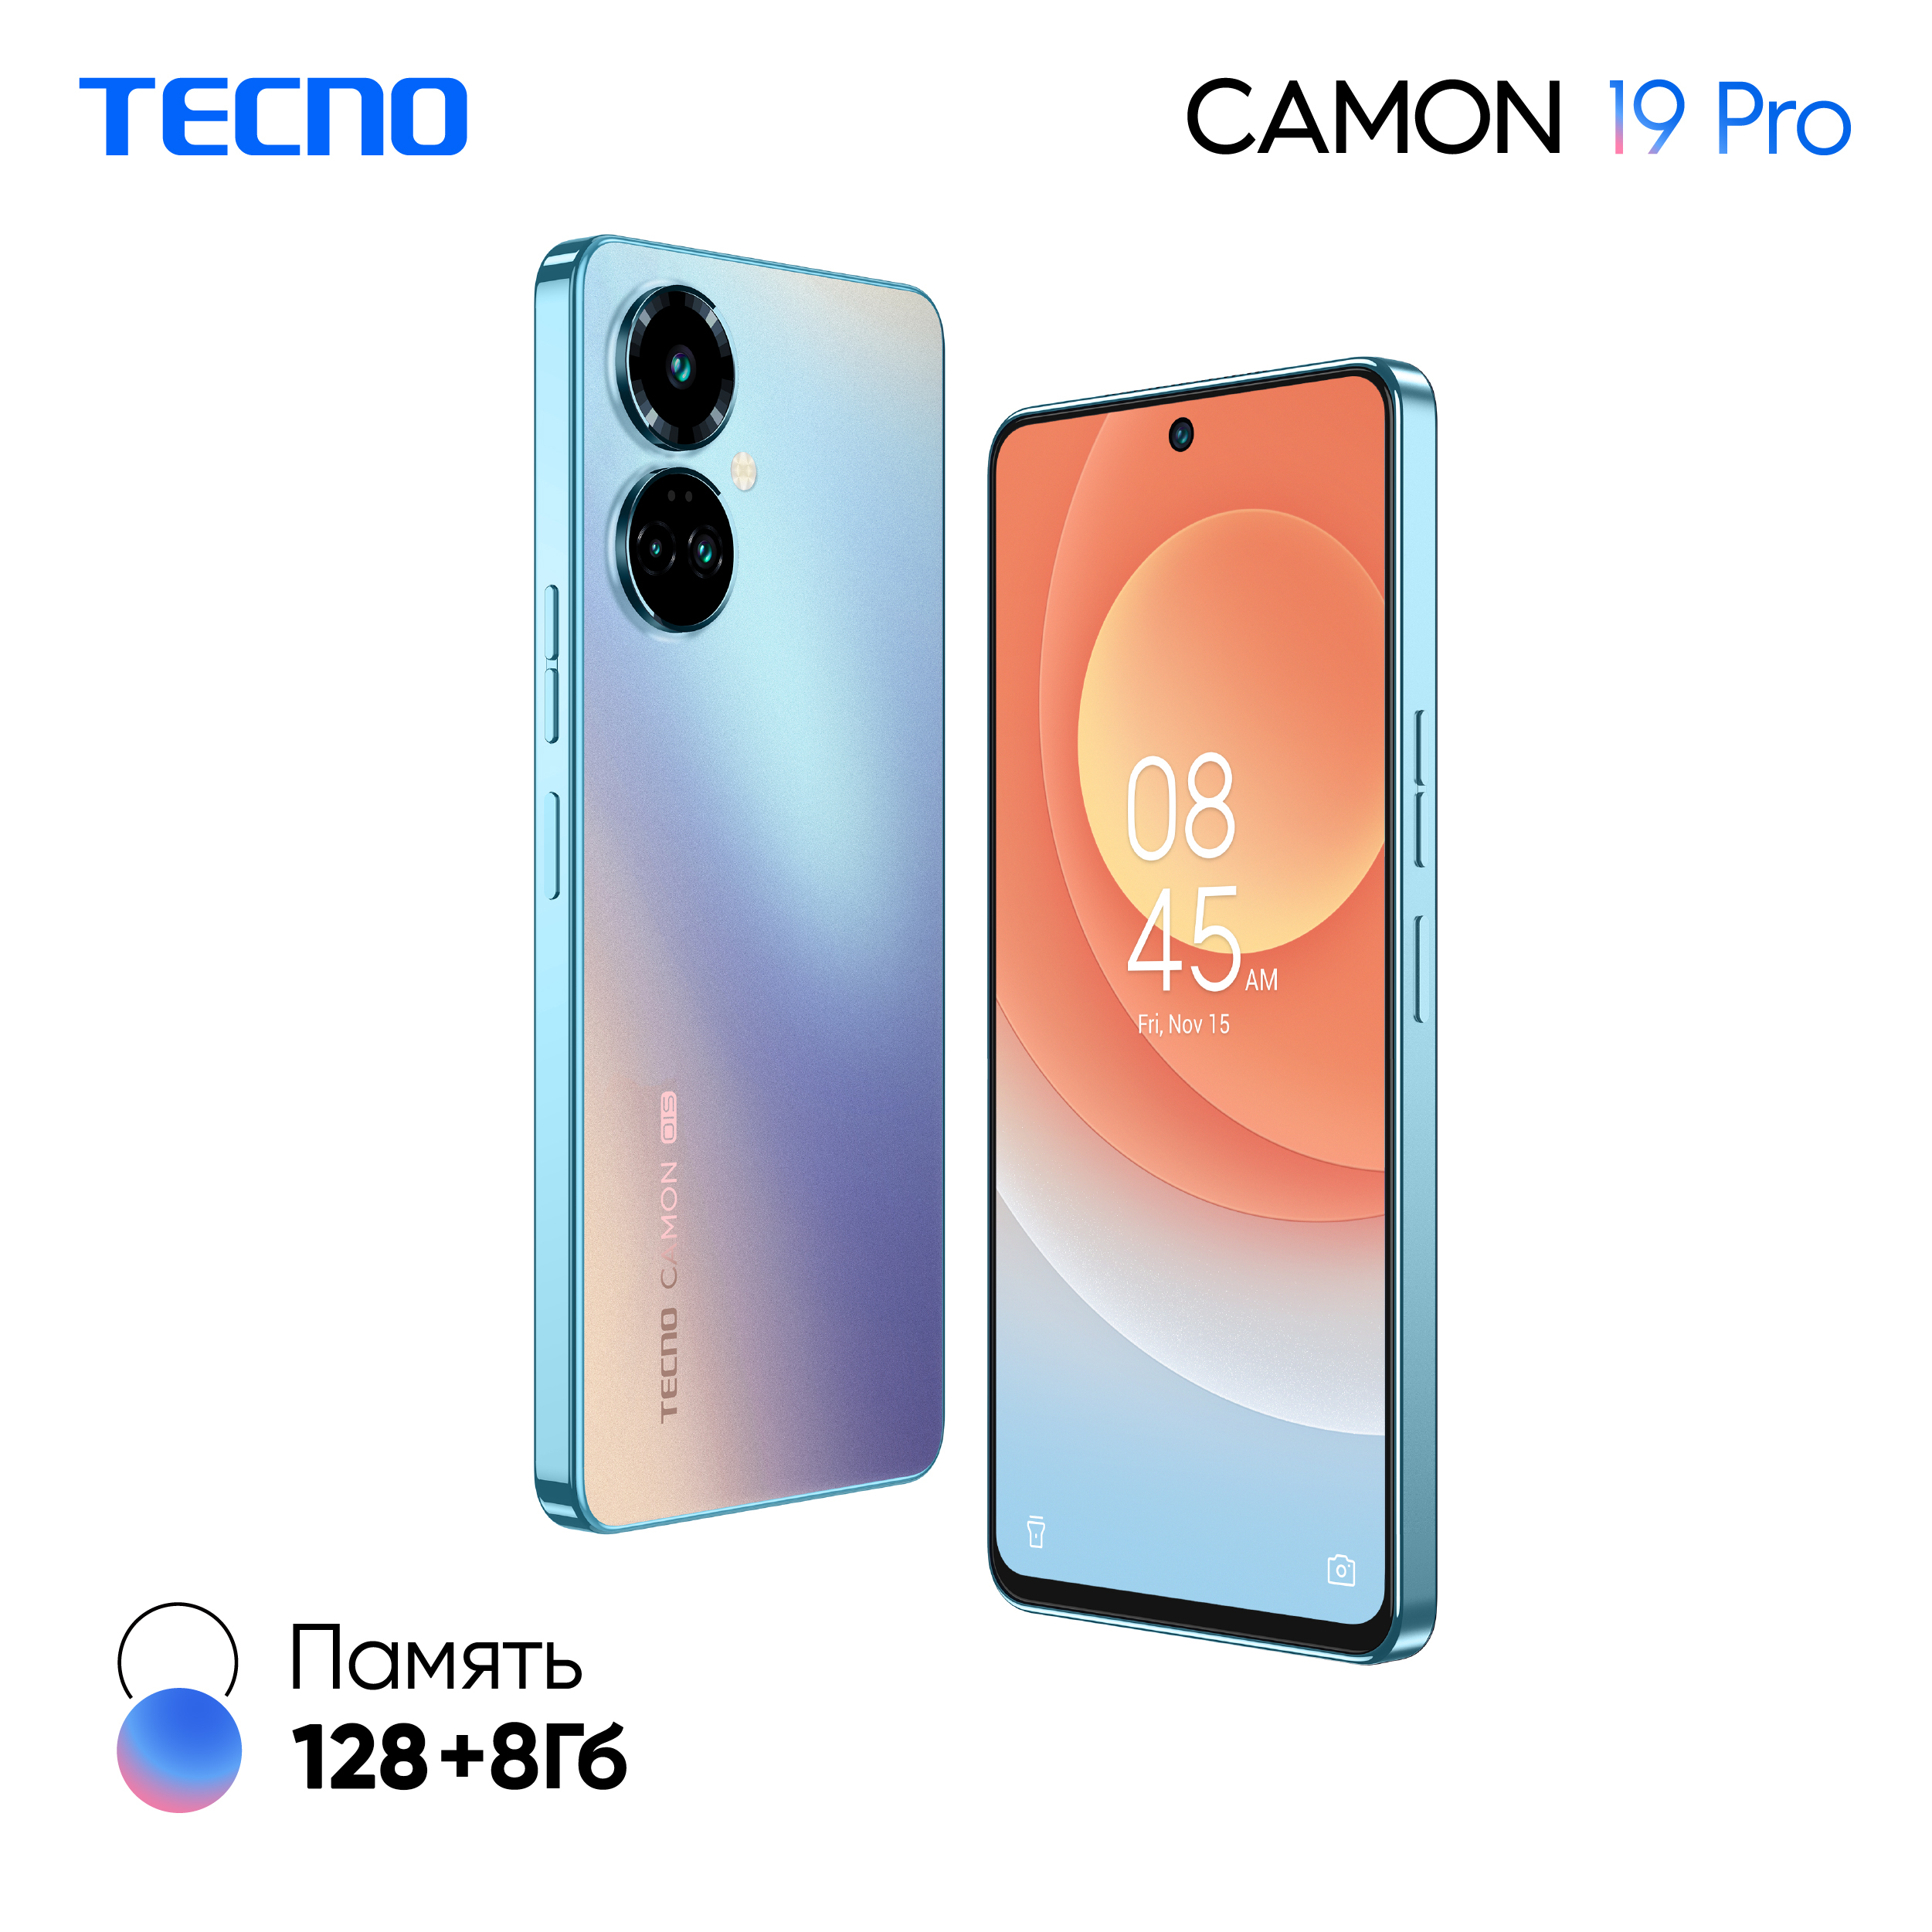 Телефон camon 19 pro. Tecno Camon 19 Pro 8/128 ГБ. Смартфон Techno Camon 19 Pro. Camon 19 Pro 8/128gb. Tecno Camon 19 Pro 8/128gb камера.